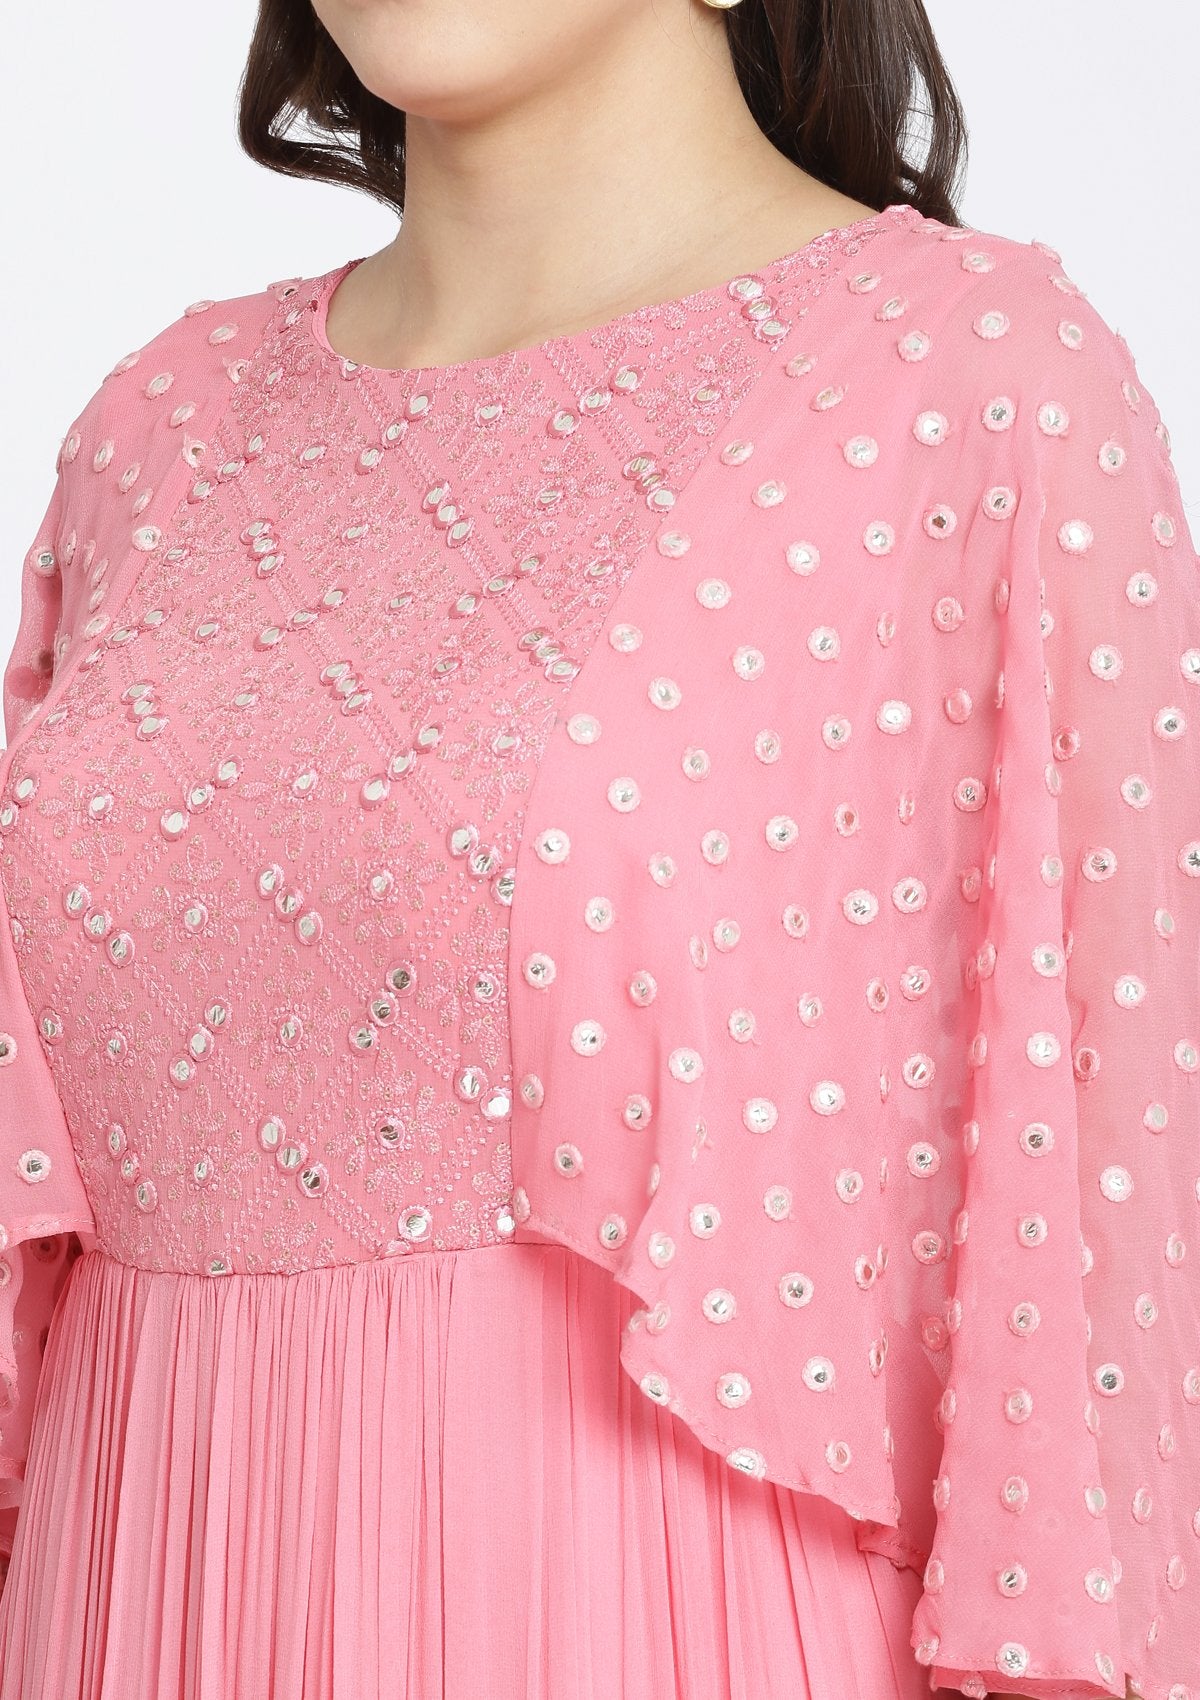 Pink Chikankari Georgette Designer Gown-Koskii